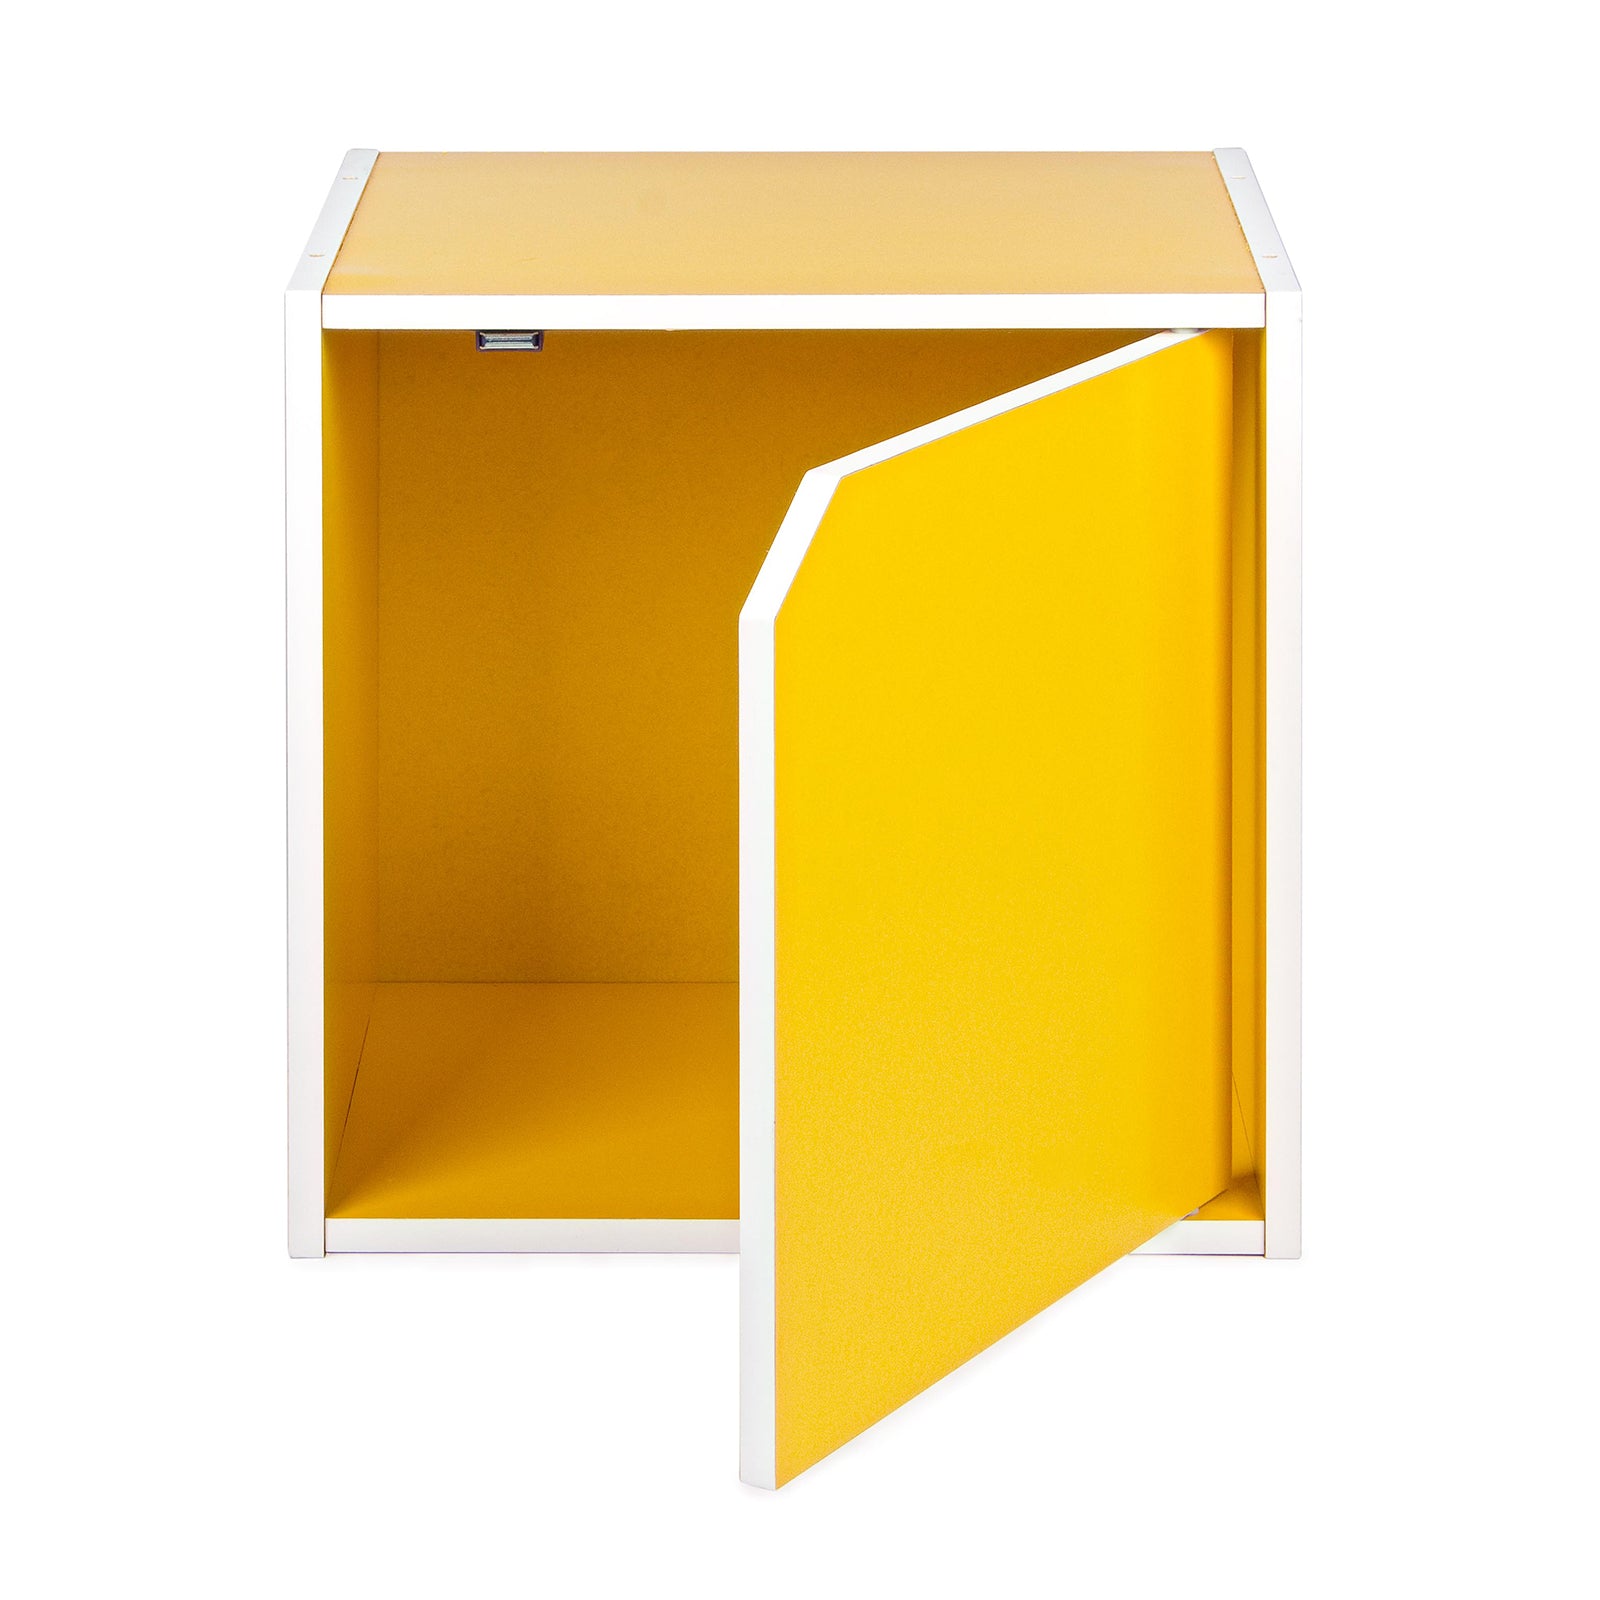 Cubo mensola 35 cm componibile a libreria arredamento moderno / Cubo con  anta / Blu